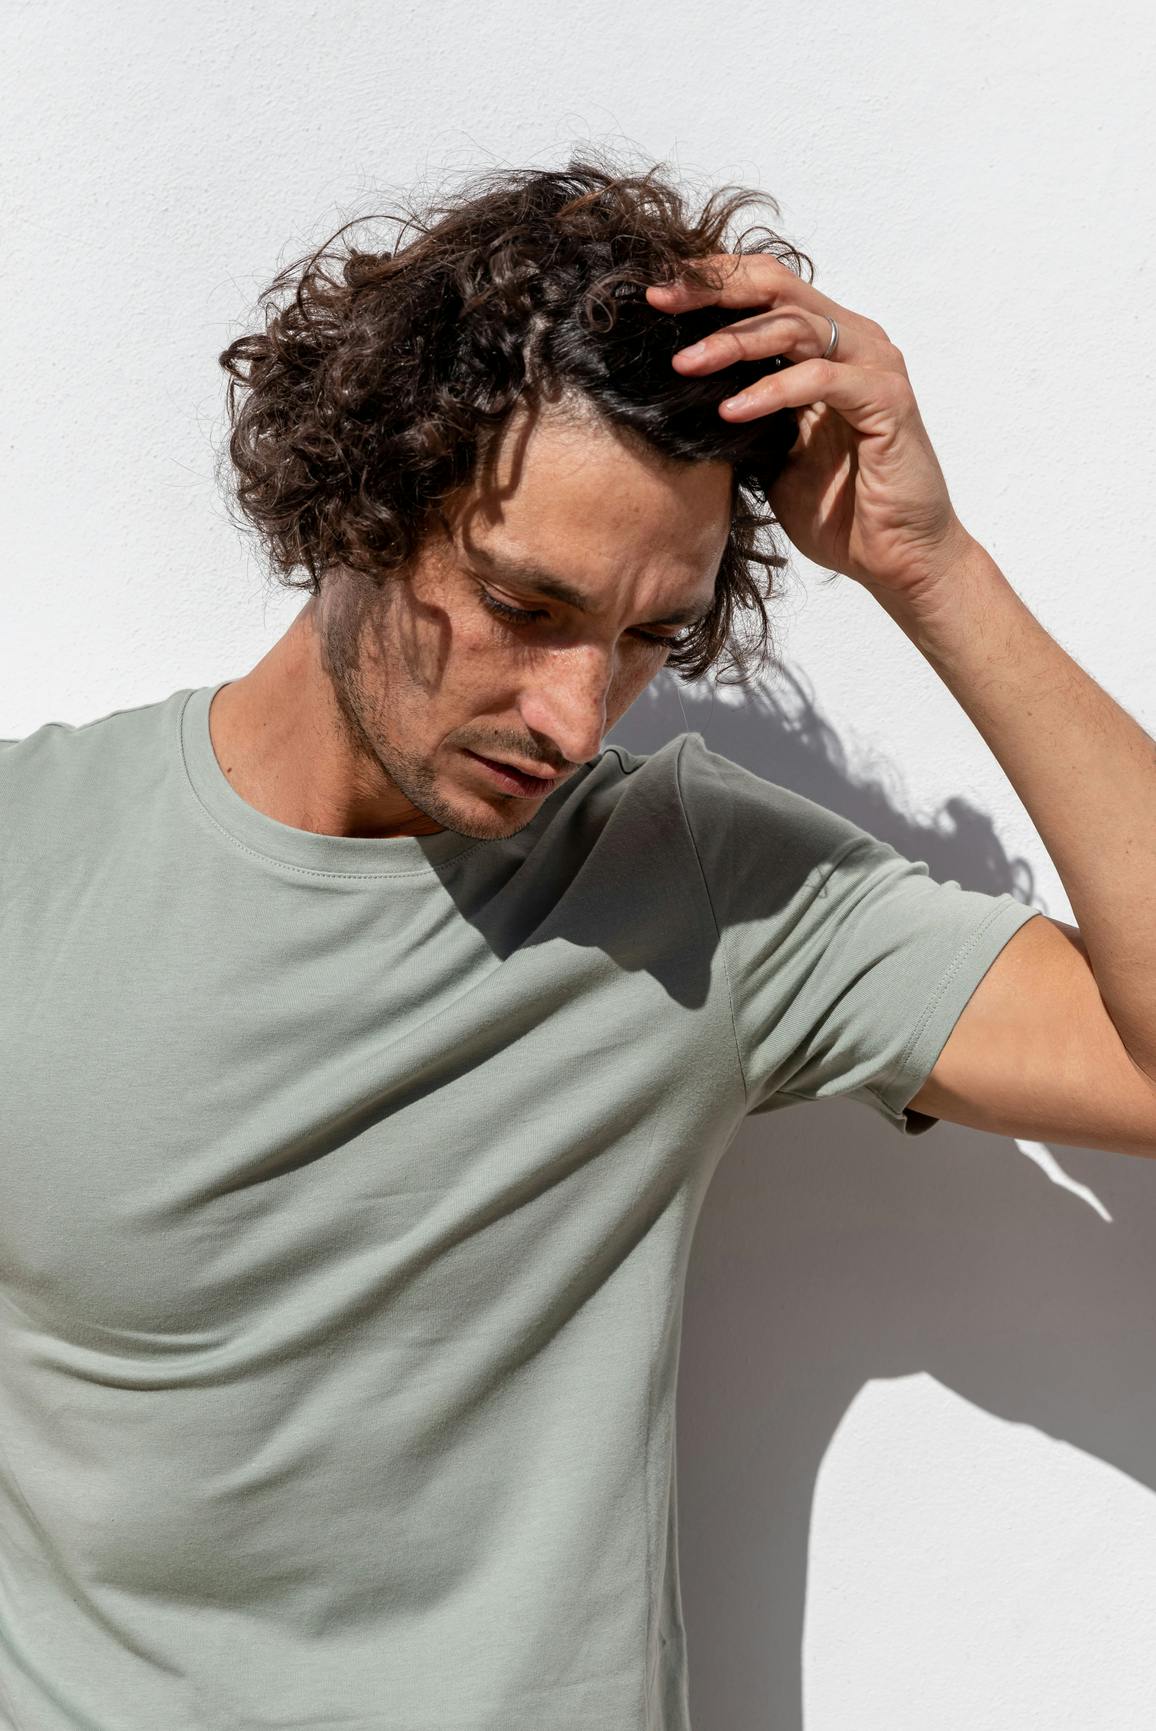 Un hombre de pie contra una pared blanca bajo el sol, pasando su mano por su cabello castaño y rizado mientras mira hacia abajo.